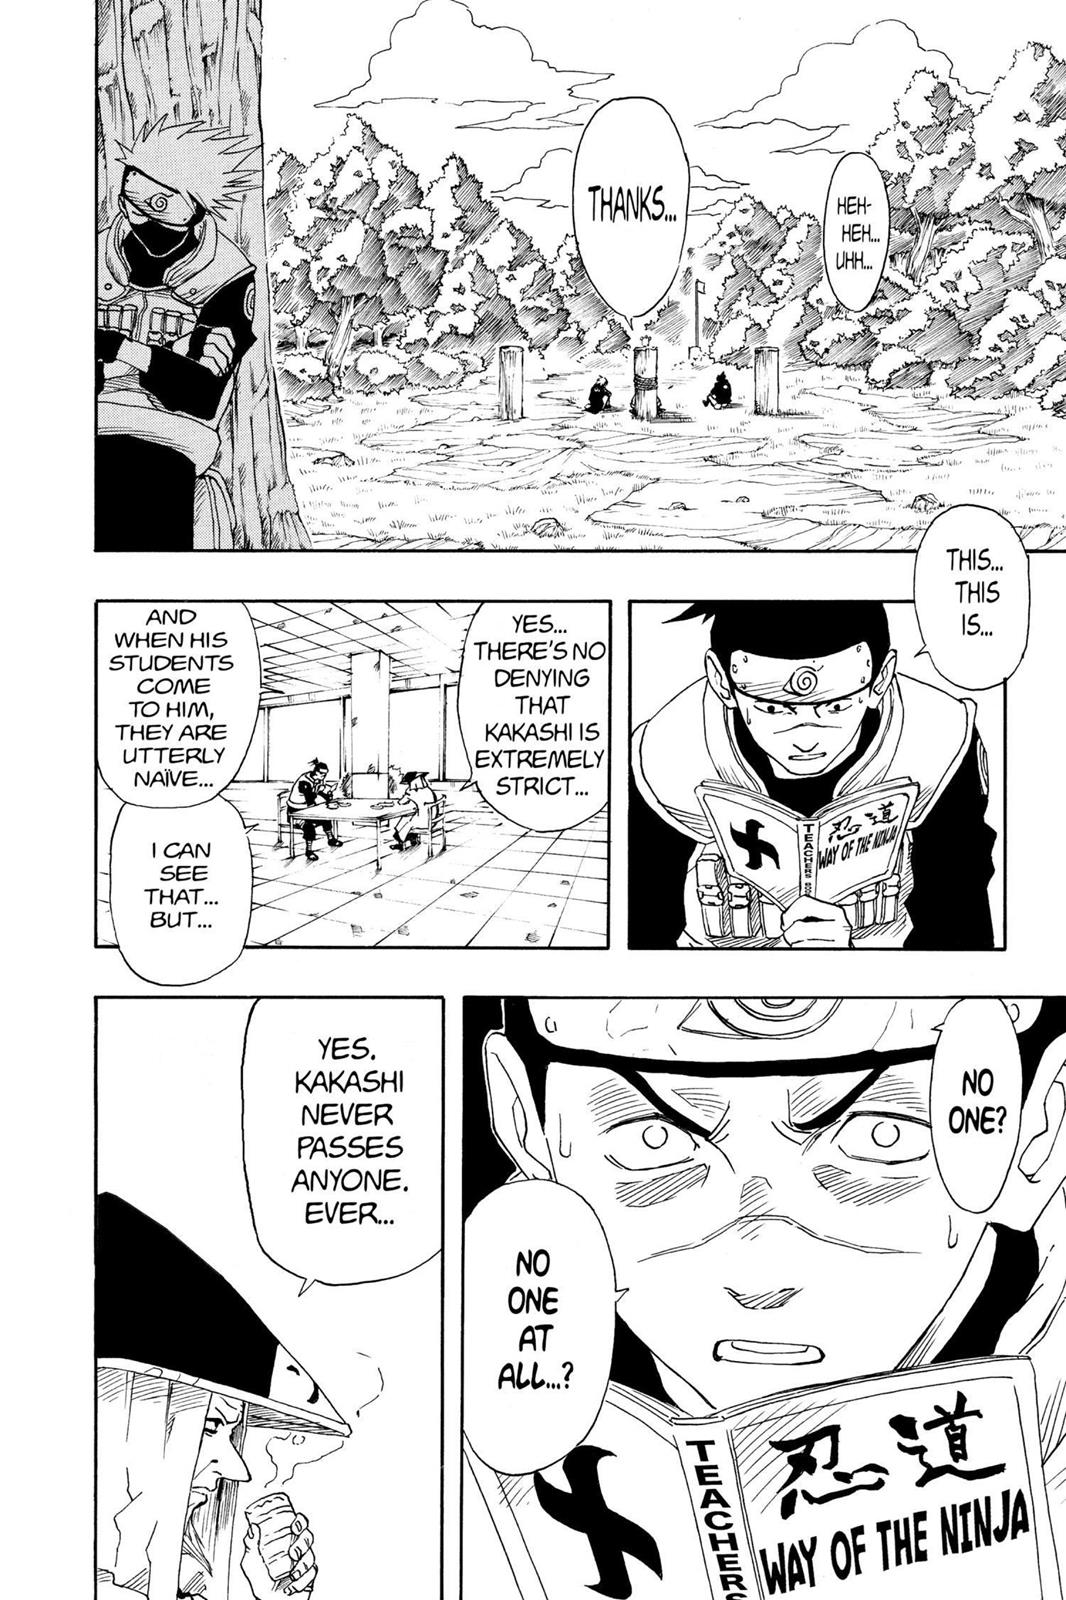 Naruto, Chapter 8 - Naruto Shippuden Manga Online